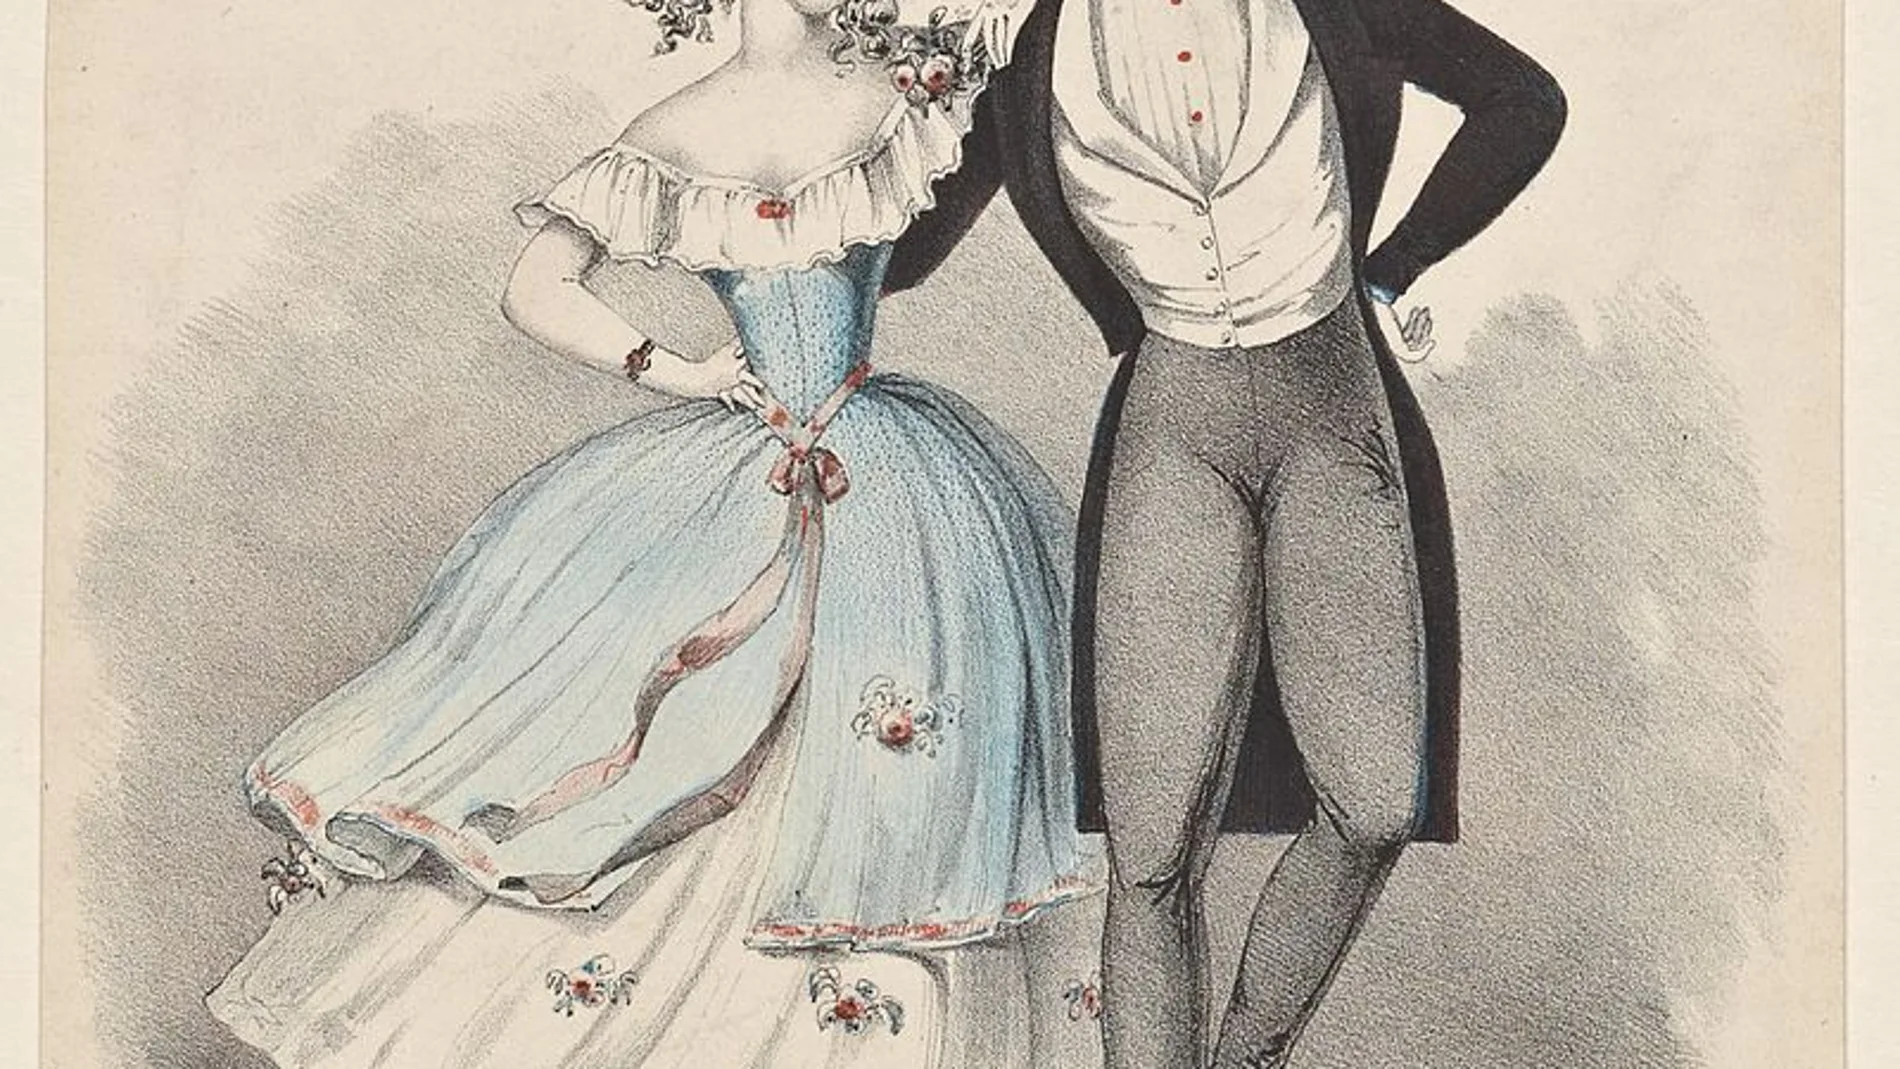 Representación de una pareja bailando Polca